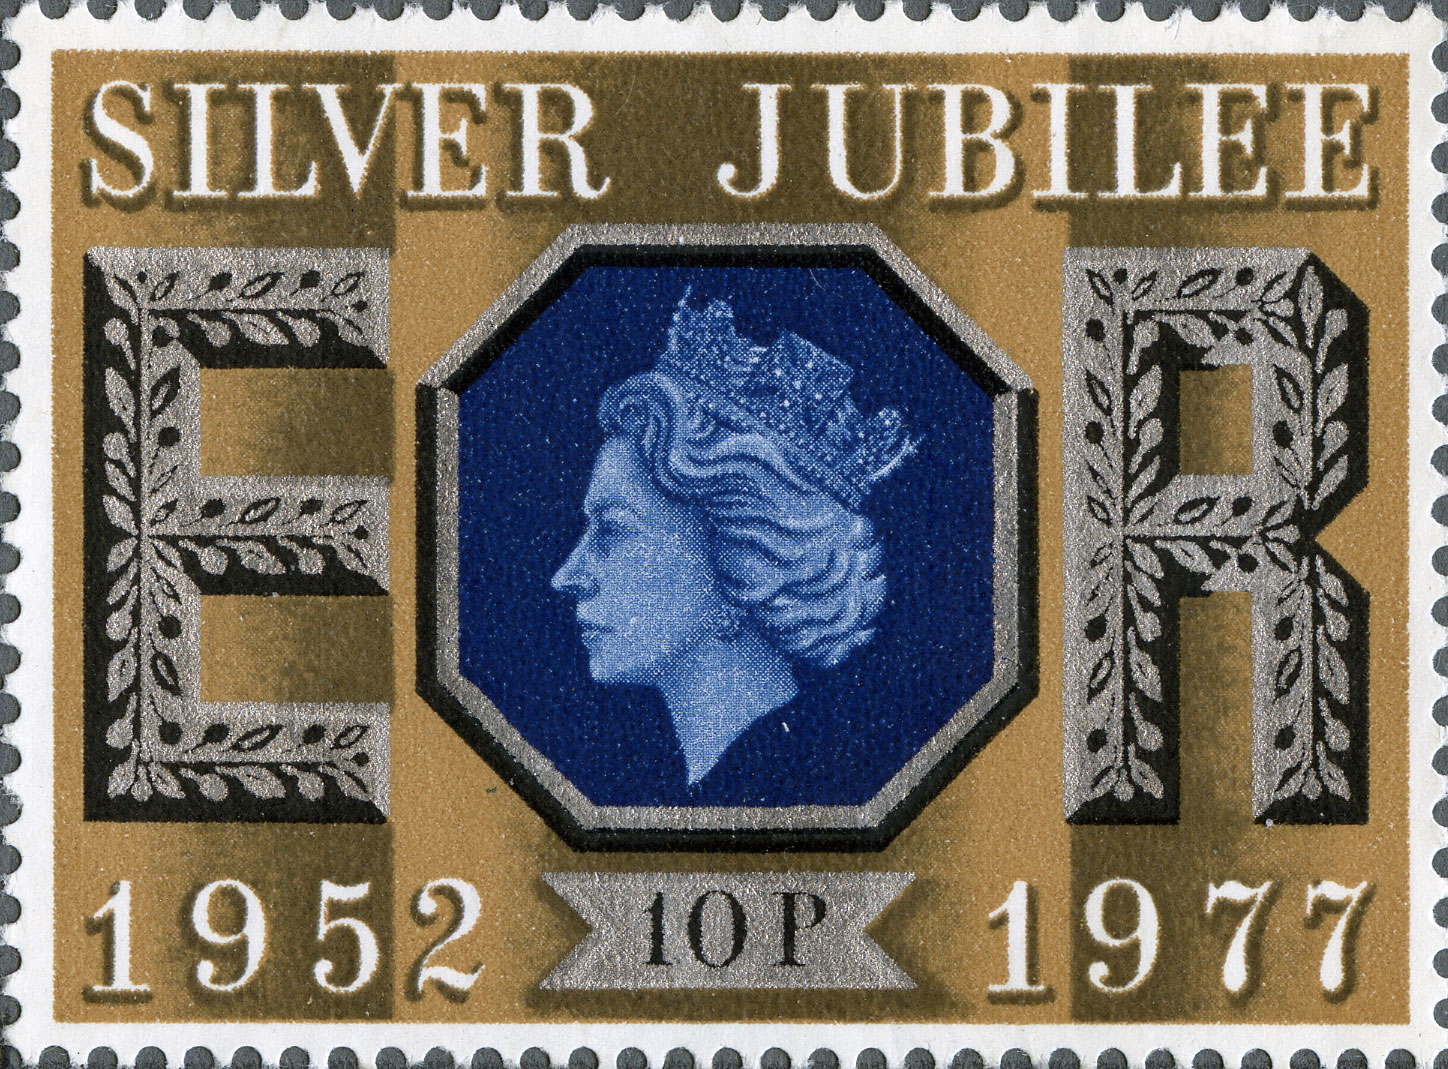 10p, Silver Jubilee